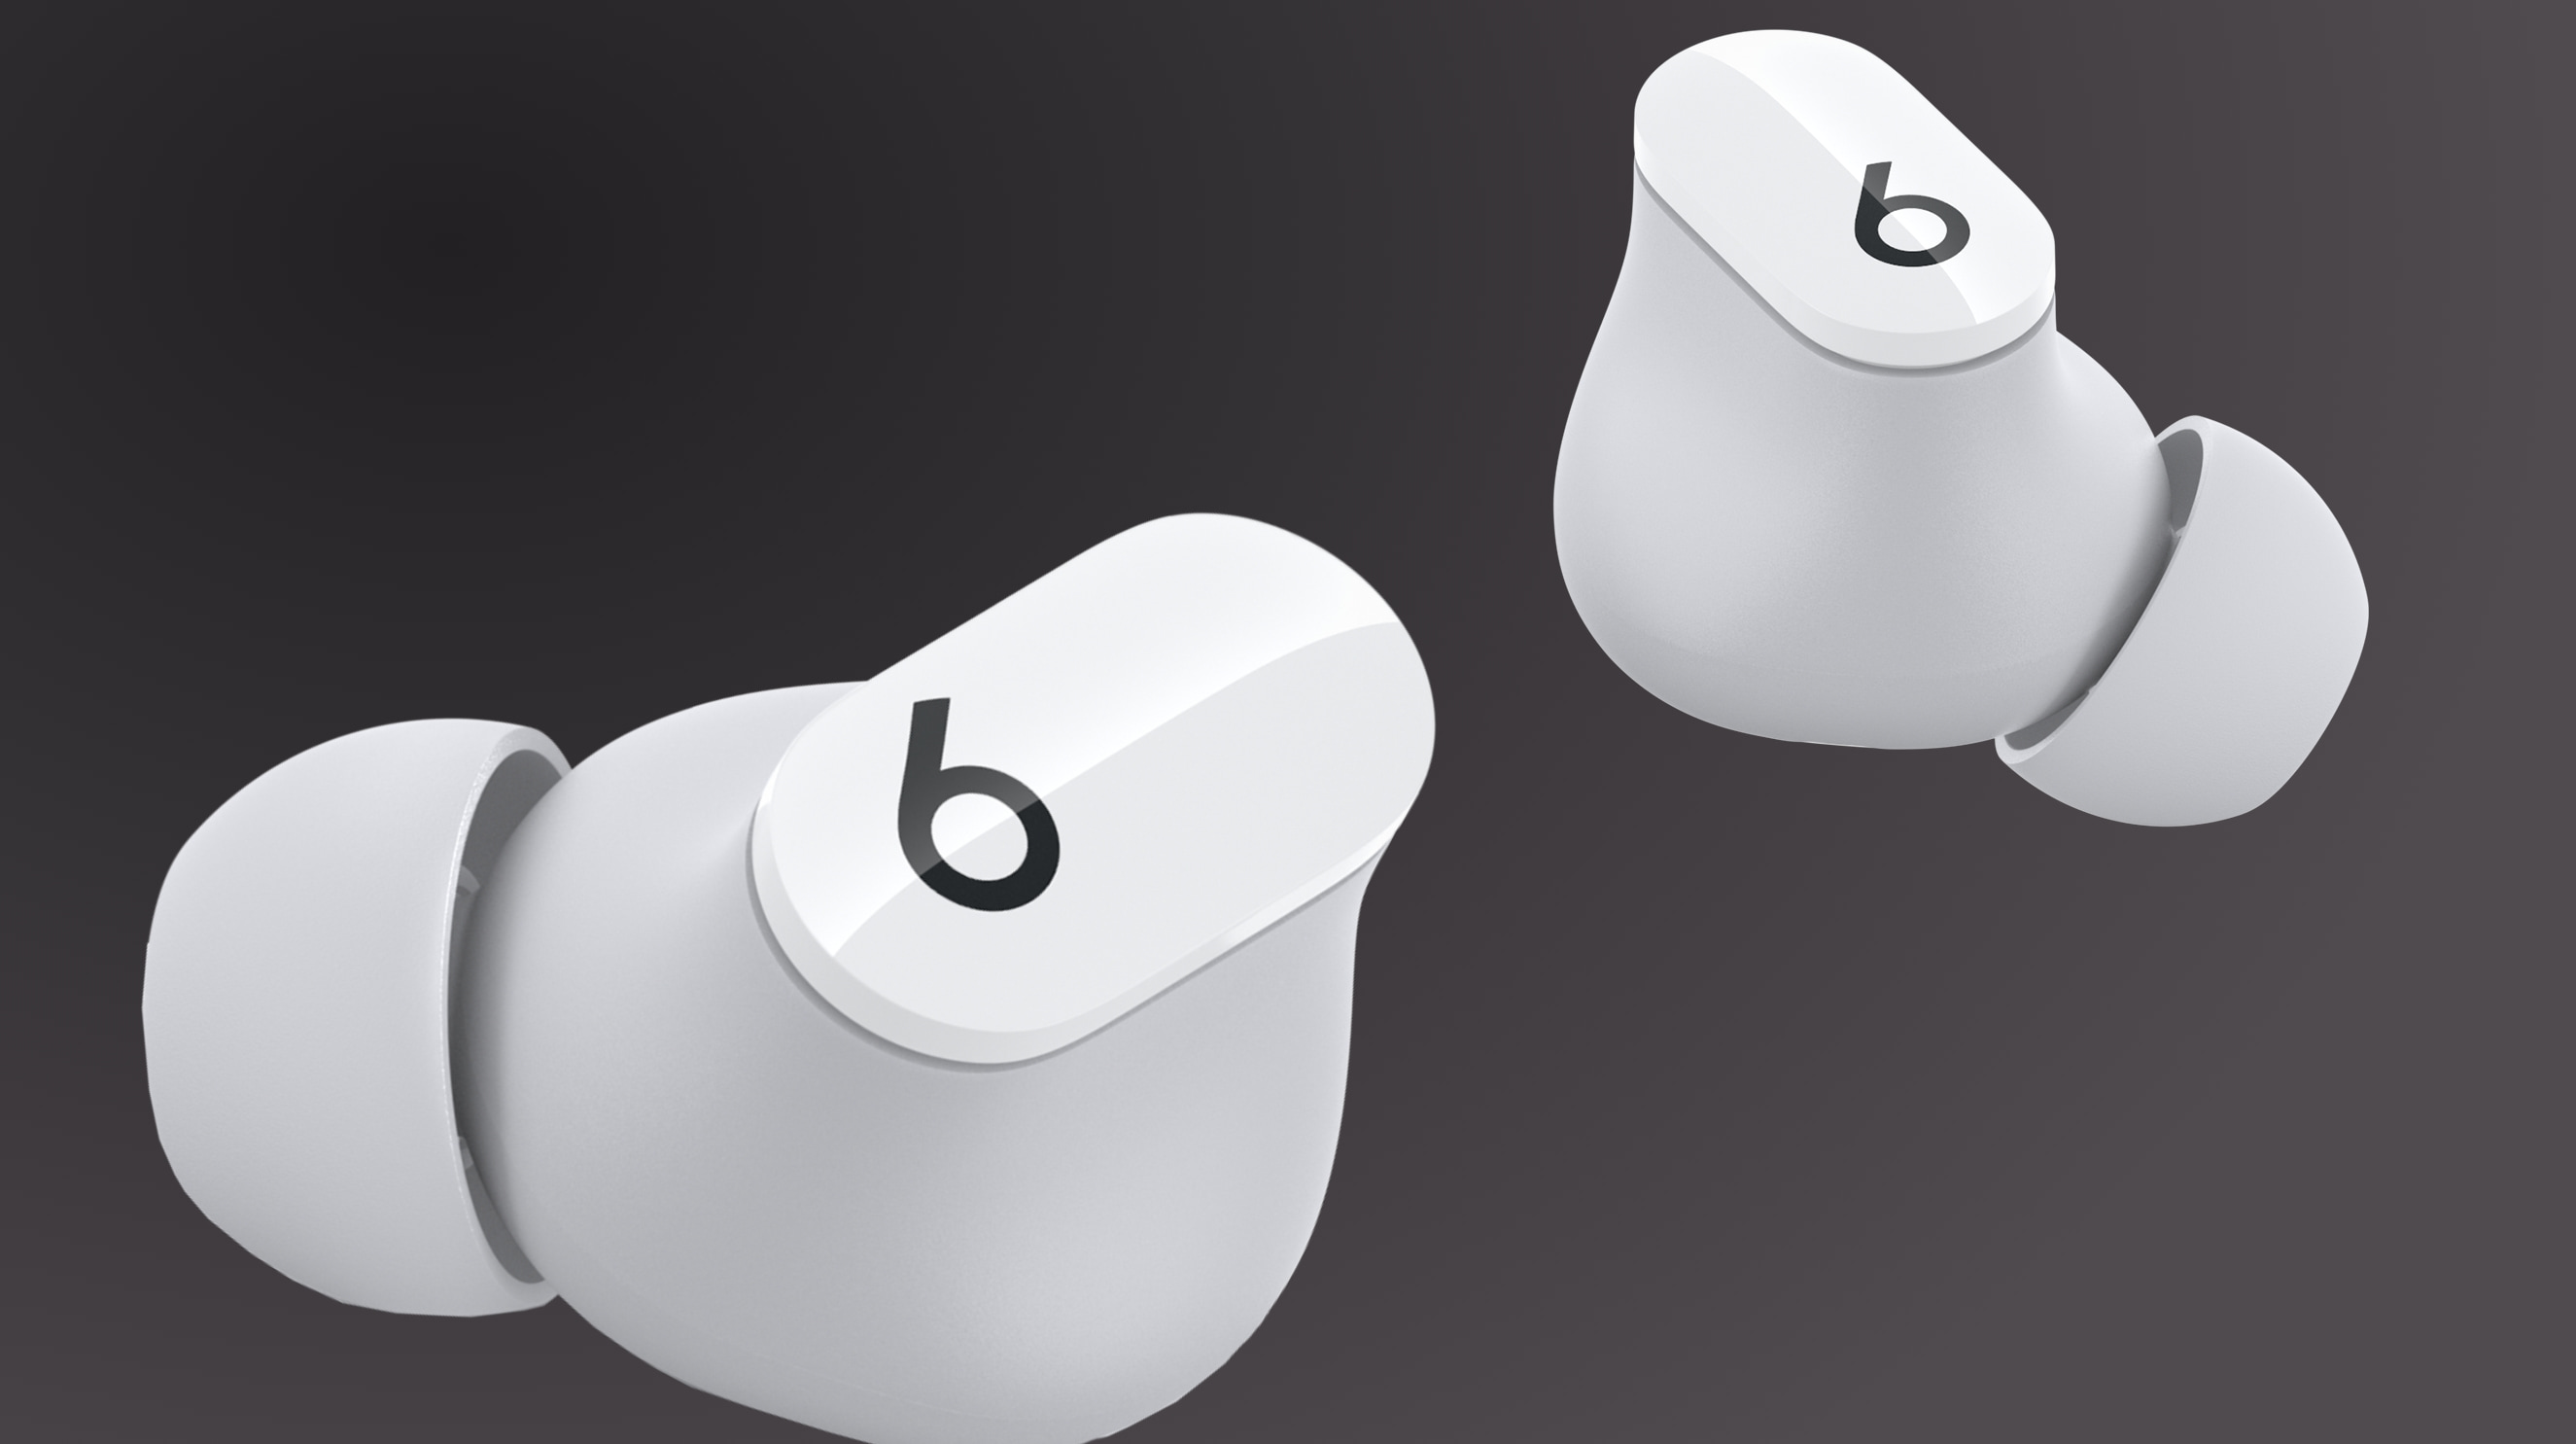 Beats Studio Buds True Wireless Noise Cancelling Earphones – White - Apple